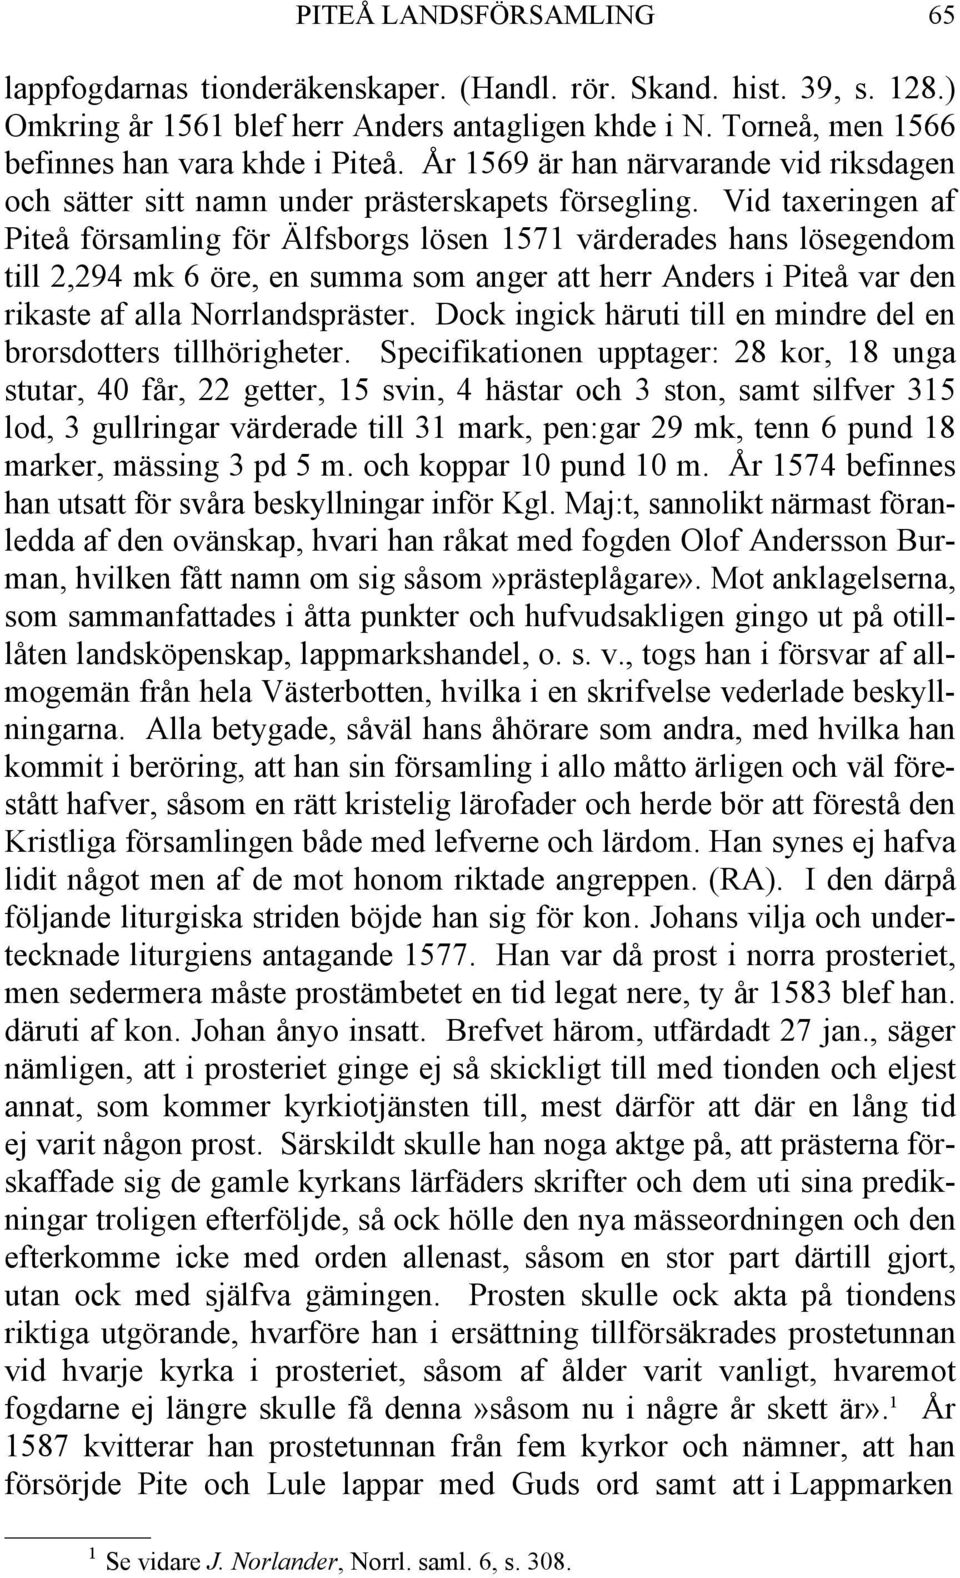 Vid taxeringen af Piteå församling för Älfsborgs lösen 1571 värderades hans lösegendom till 2,294 mk 6 öre, en summa som anger att herr Anders i Piteå var den rikaste af alla Norrlandspräster.